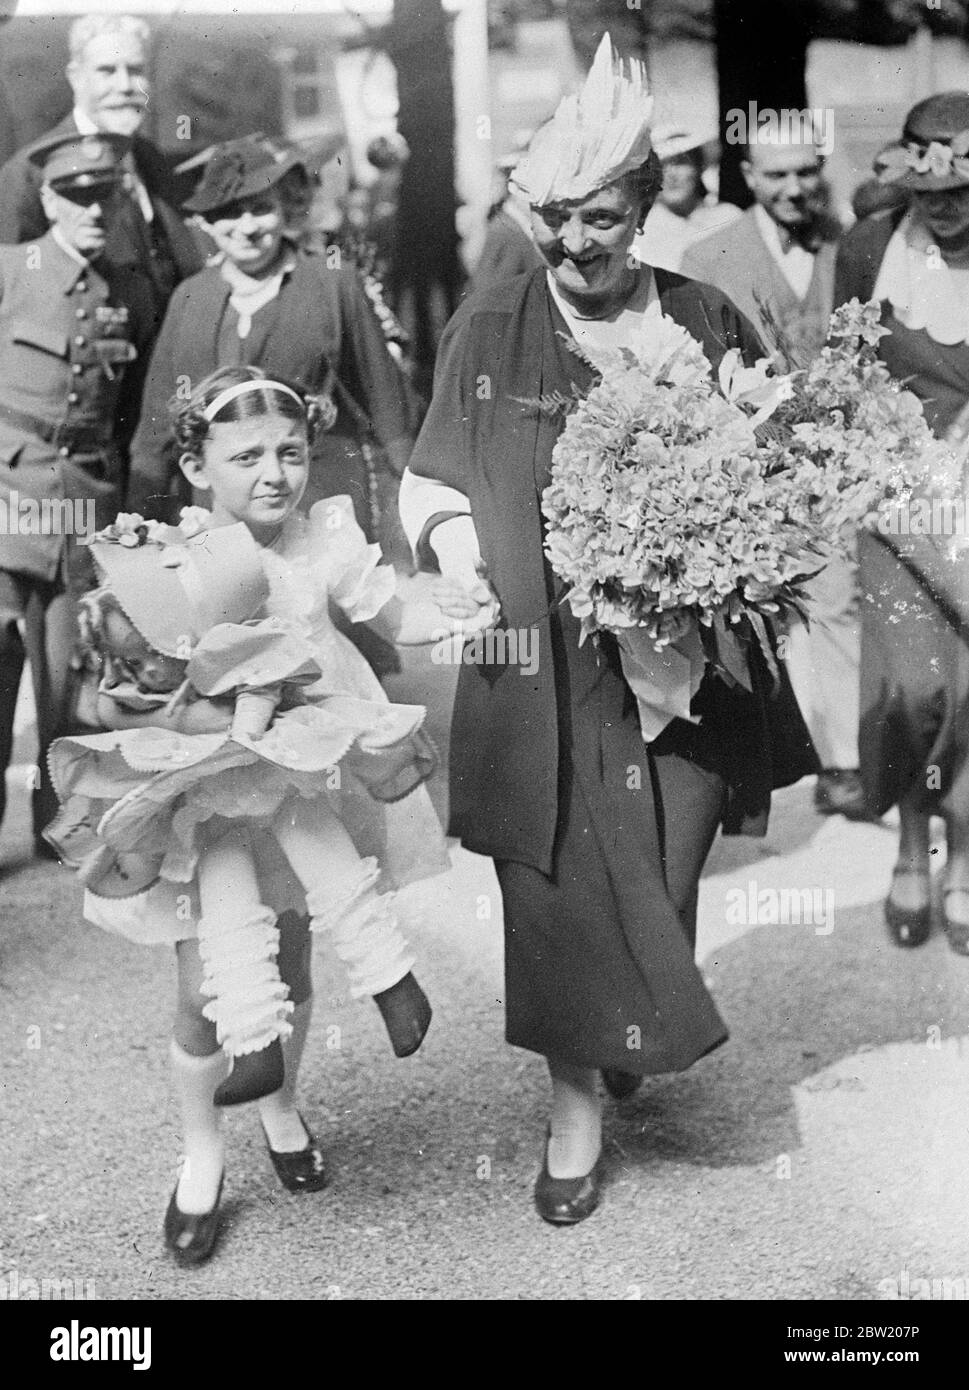 Décrite comme une prodige musicale, Annie Fresse Linard, âgée de huit ans, petite-fille du président Albert Lebrun de la République française, a donné un récital couronné de succès à l'exposition internationale de Paris. Elle porte la poupée achetée pour elle par sa grand-mère, Mme Lebrun (tenant sa main). 26 juin 1937 Banque D'Images